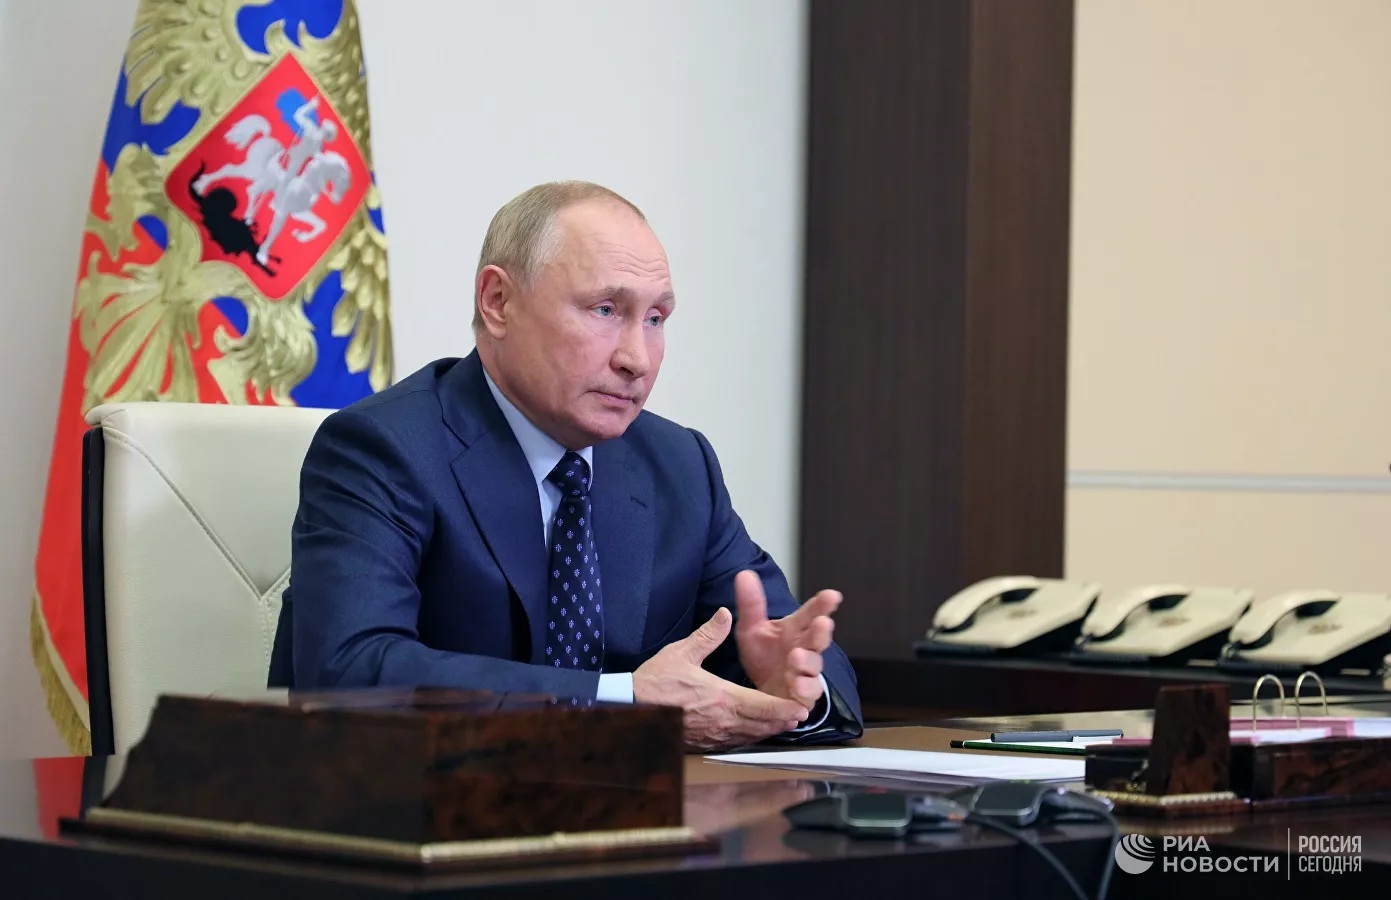 Tổng thống Putin hé lộ về người kế nhiệm